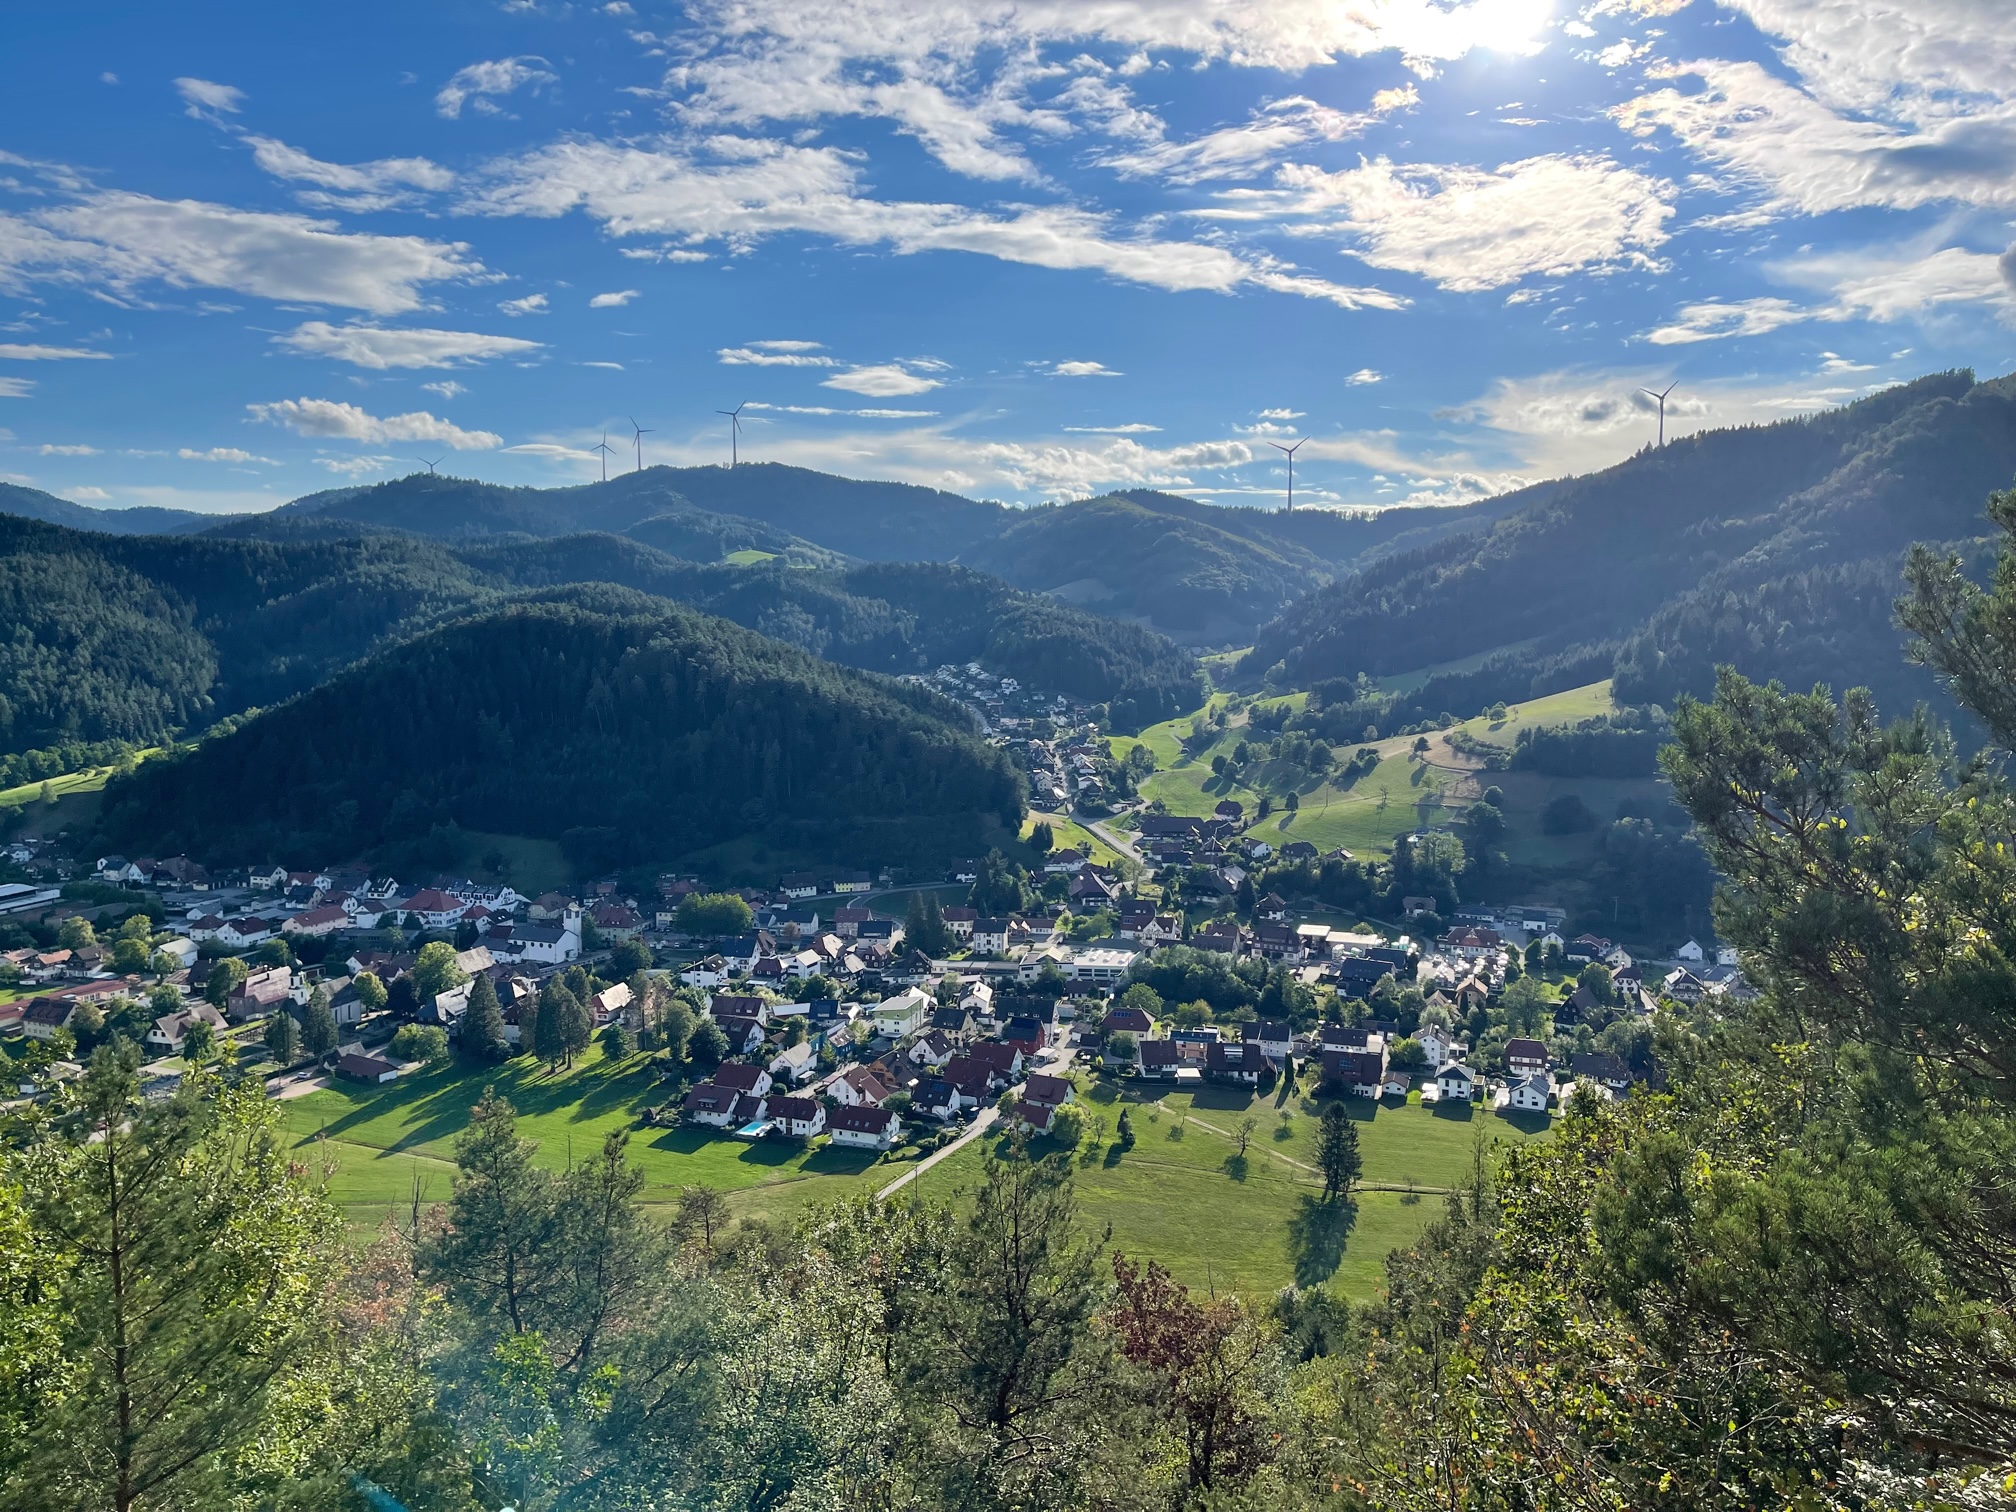 The village of Gutach